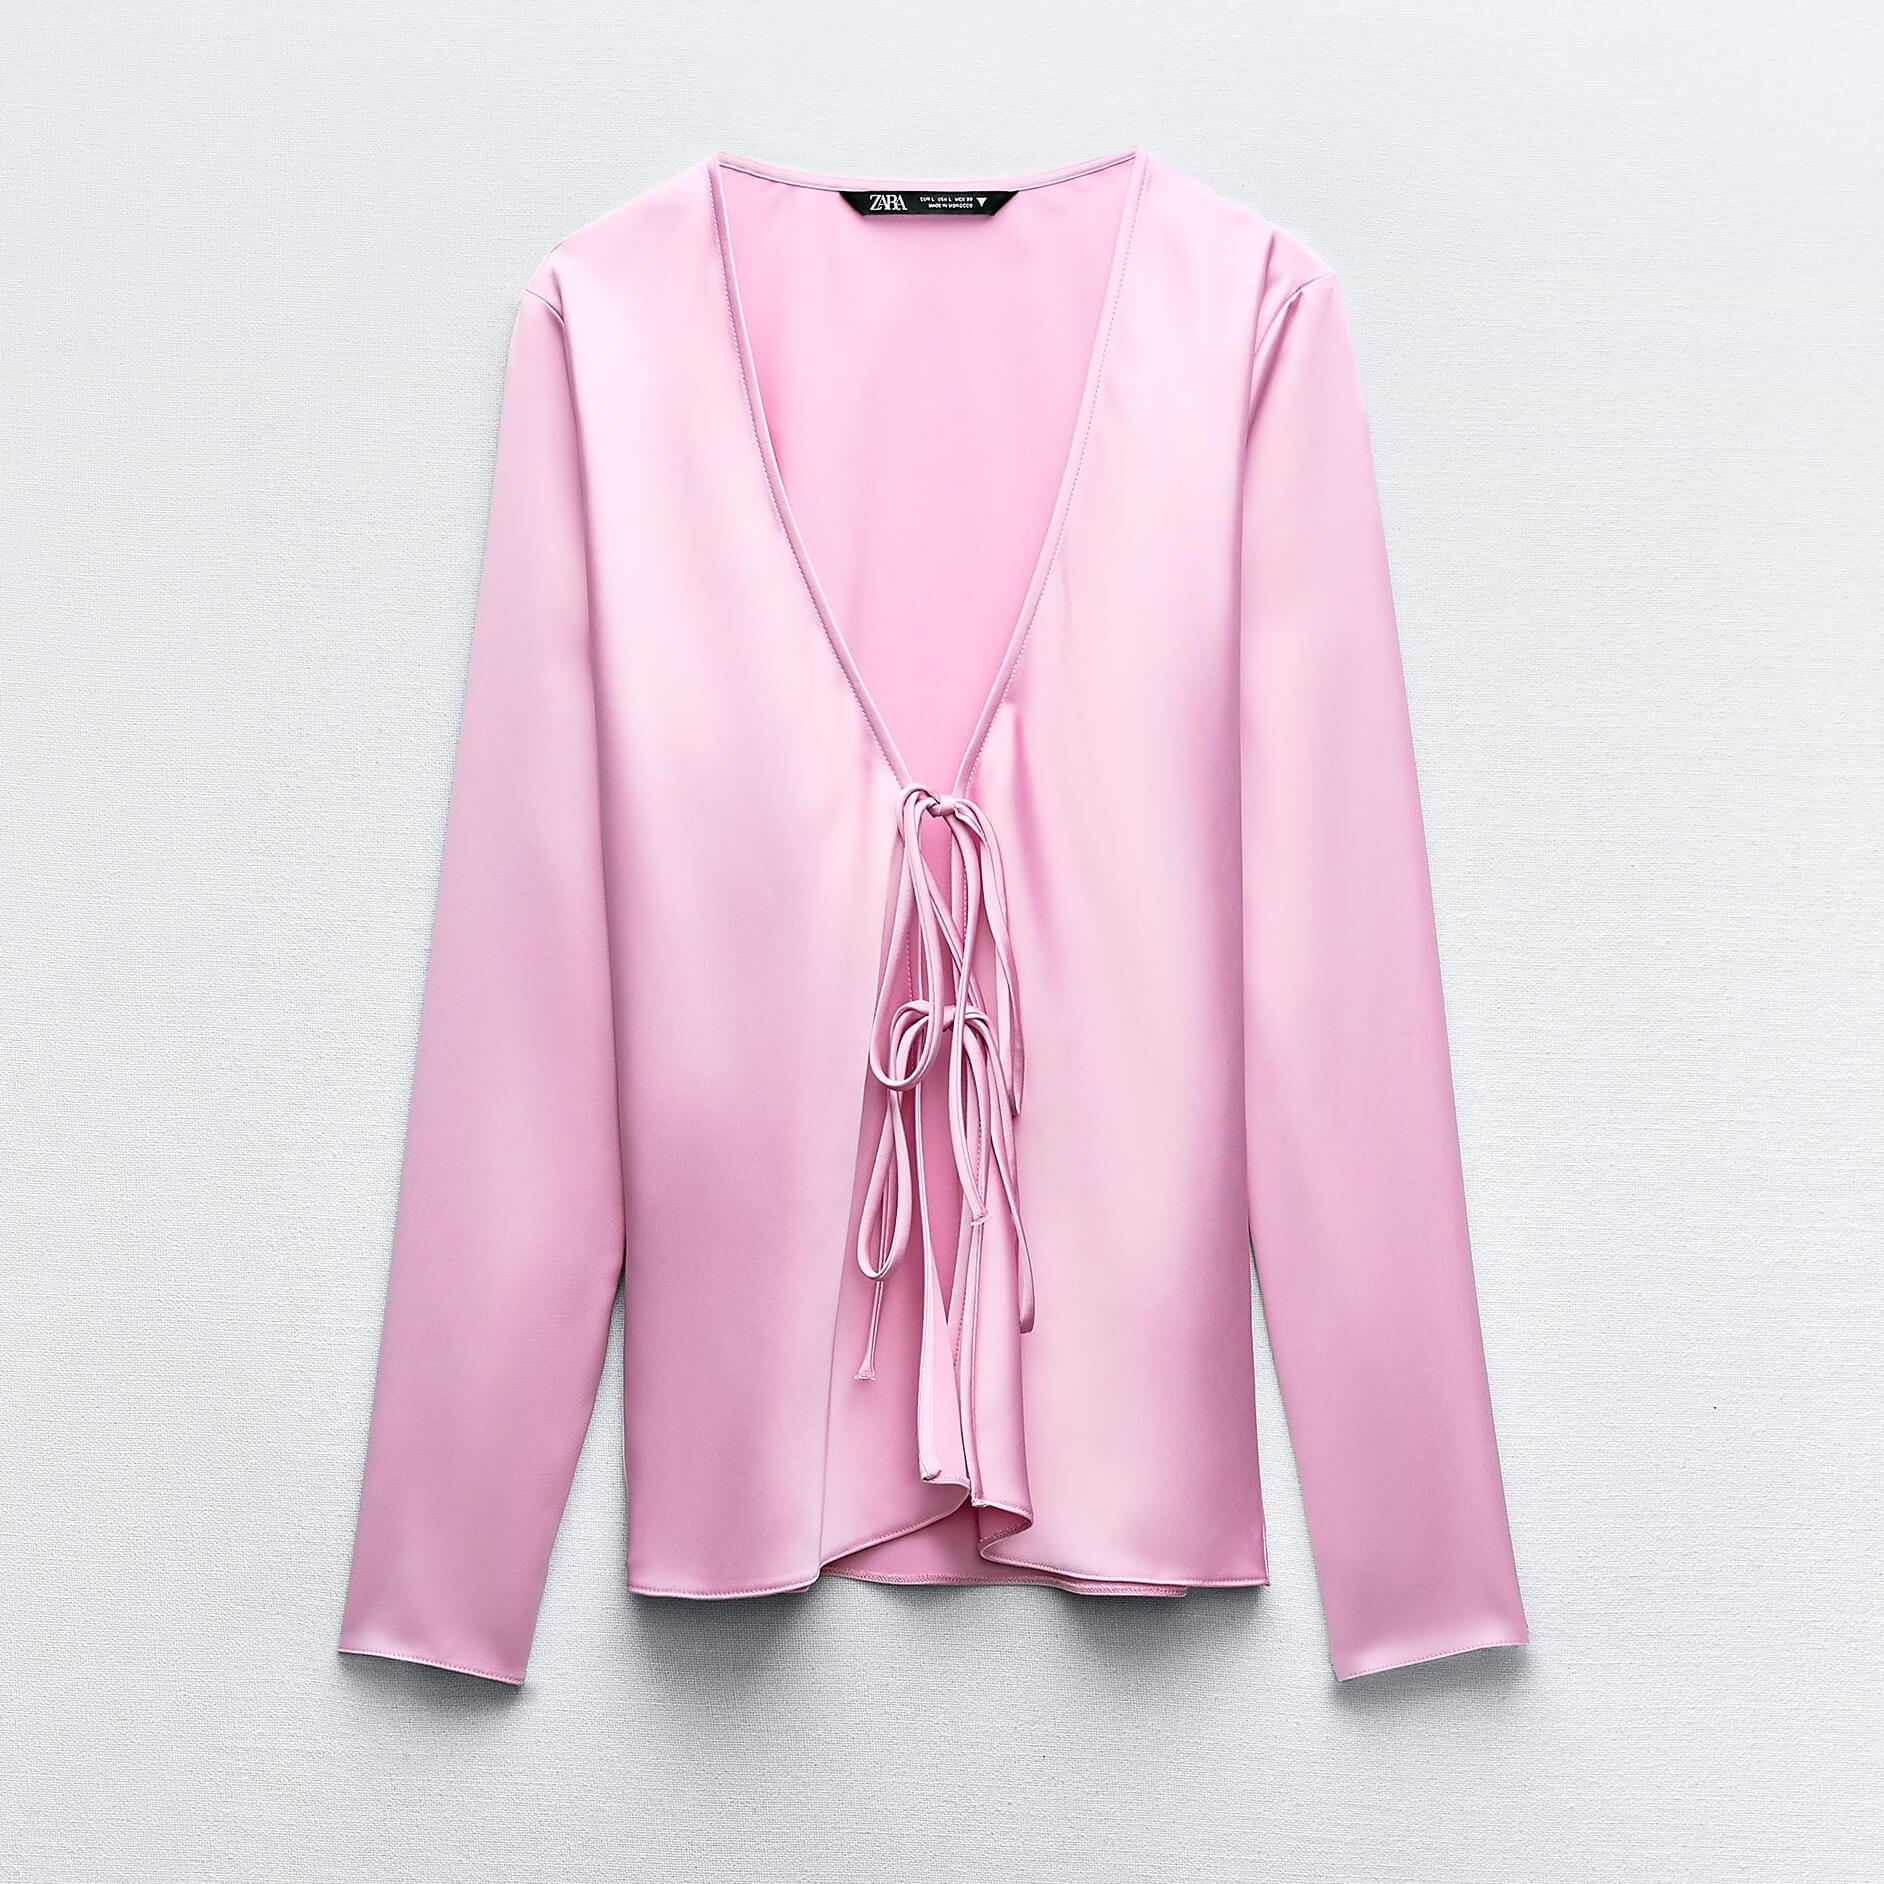 Рубашка Zara Satin With Ties, розовый рубашка zara satin with rhinestone buttons светло бежевый